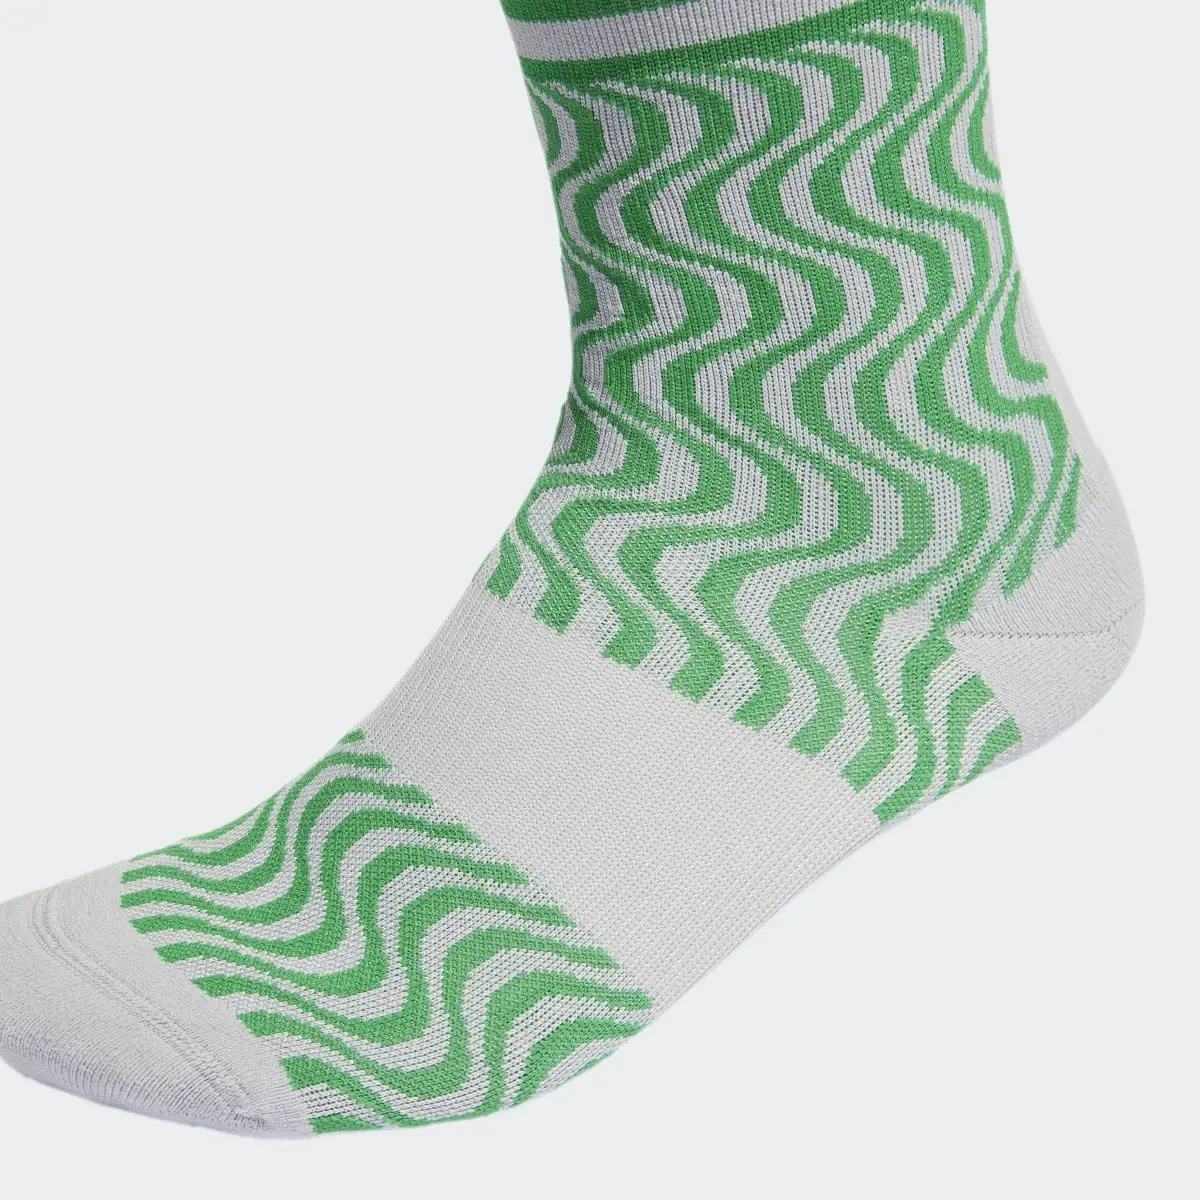 Adidas by Stella McCartney Crew Socks. 3